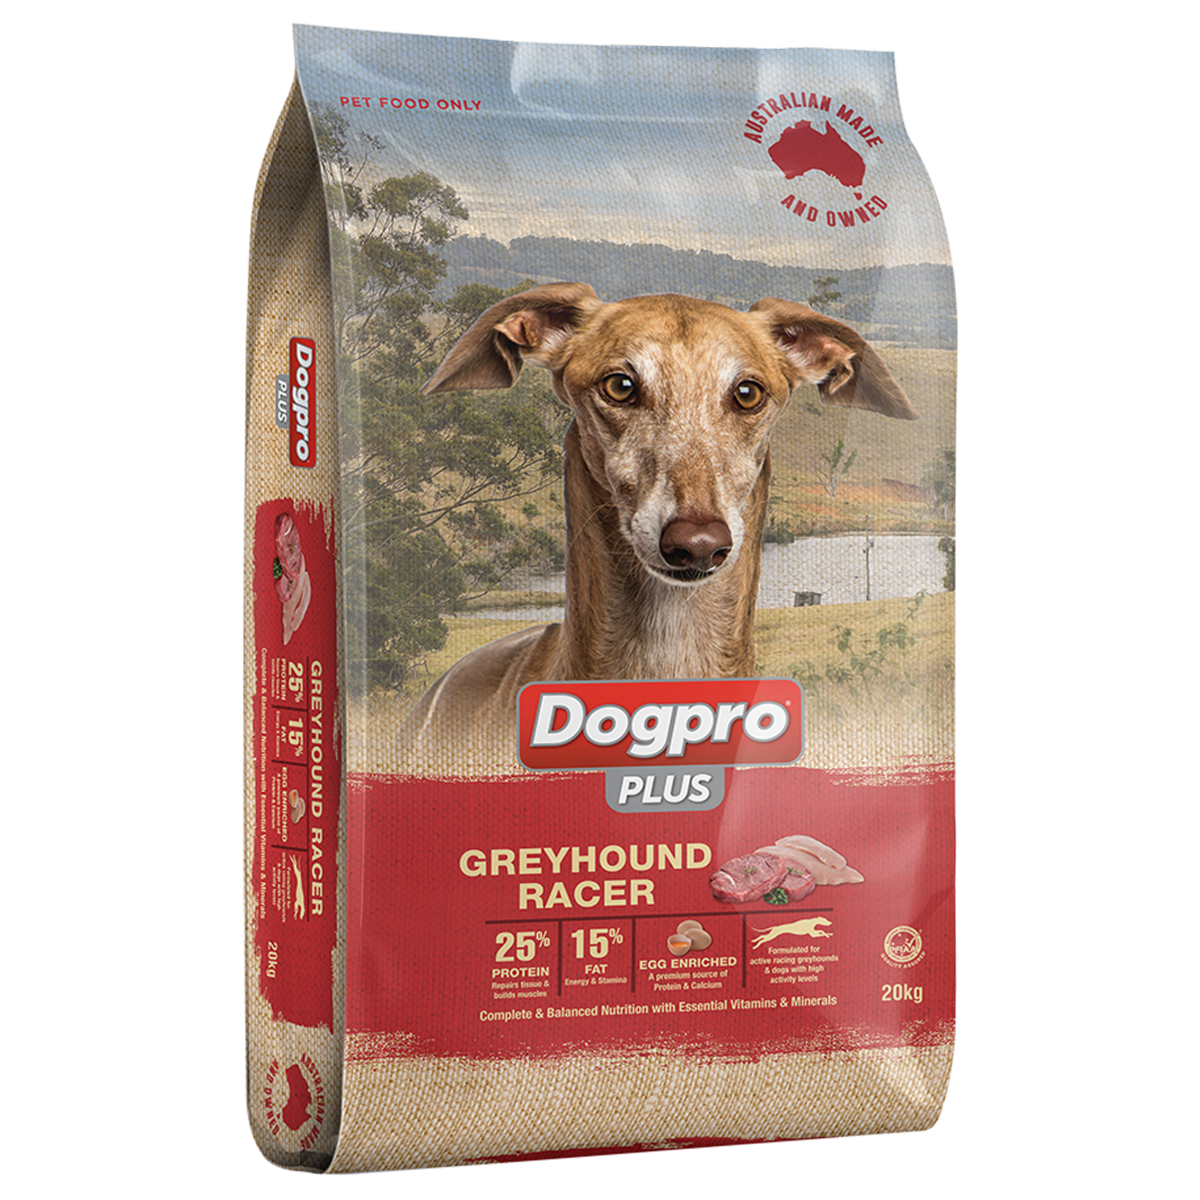 Dogpro Plus Greyhound Racer - Dry Dog Food